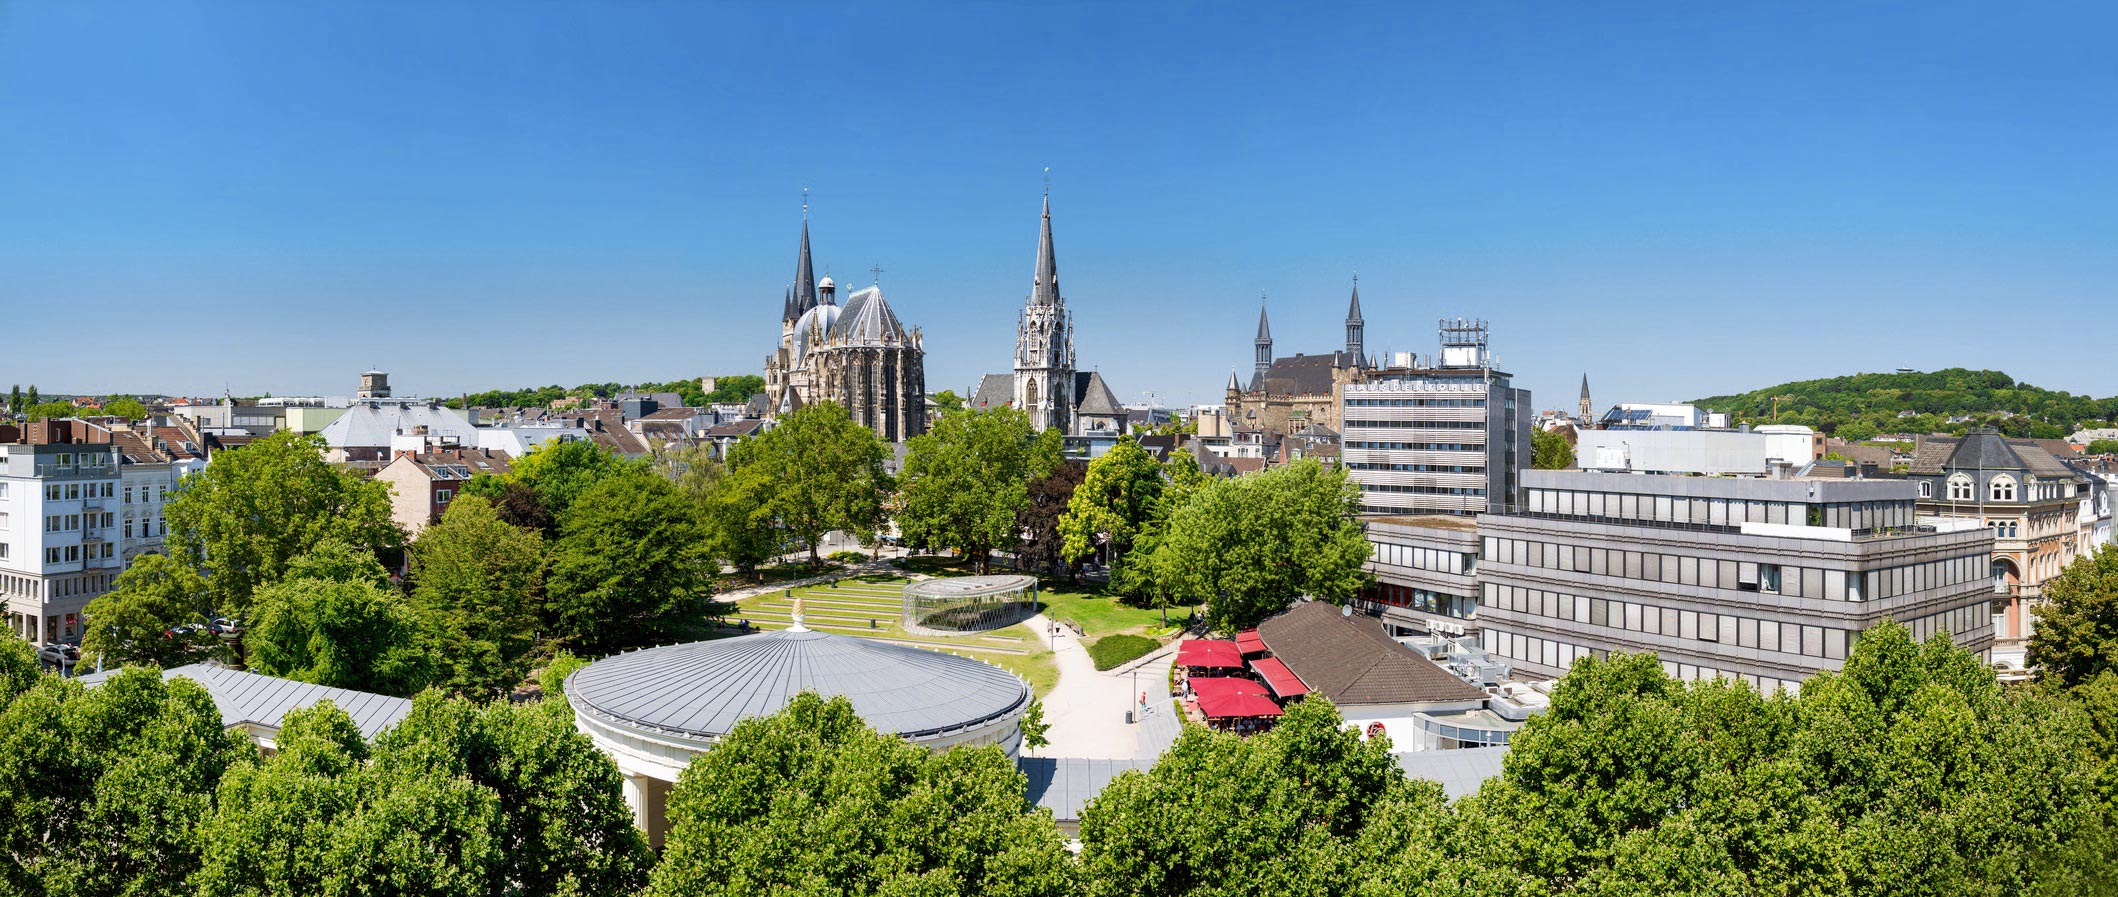 Aachen - Achener Dom, Katschhof & Rathaus